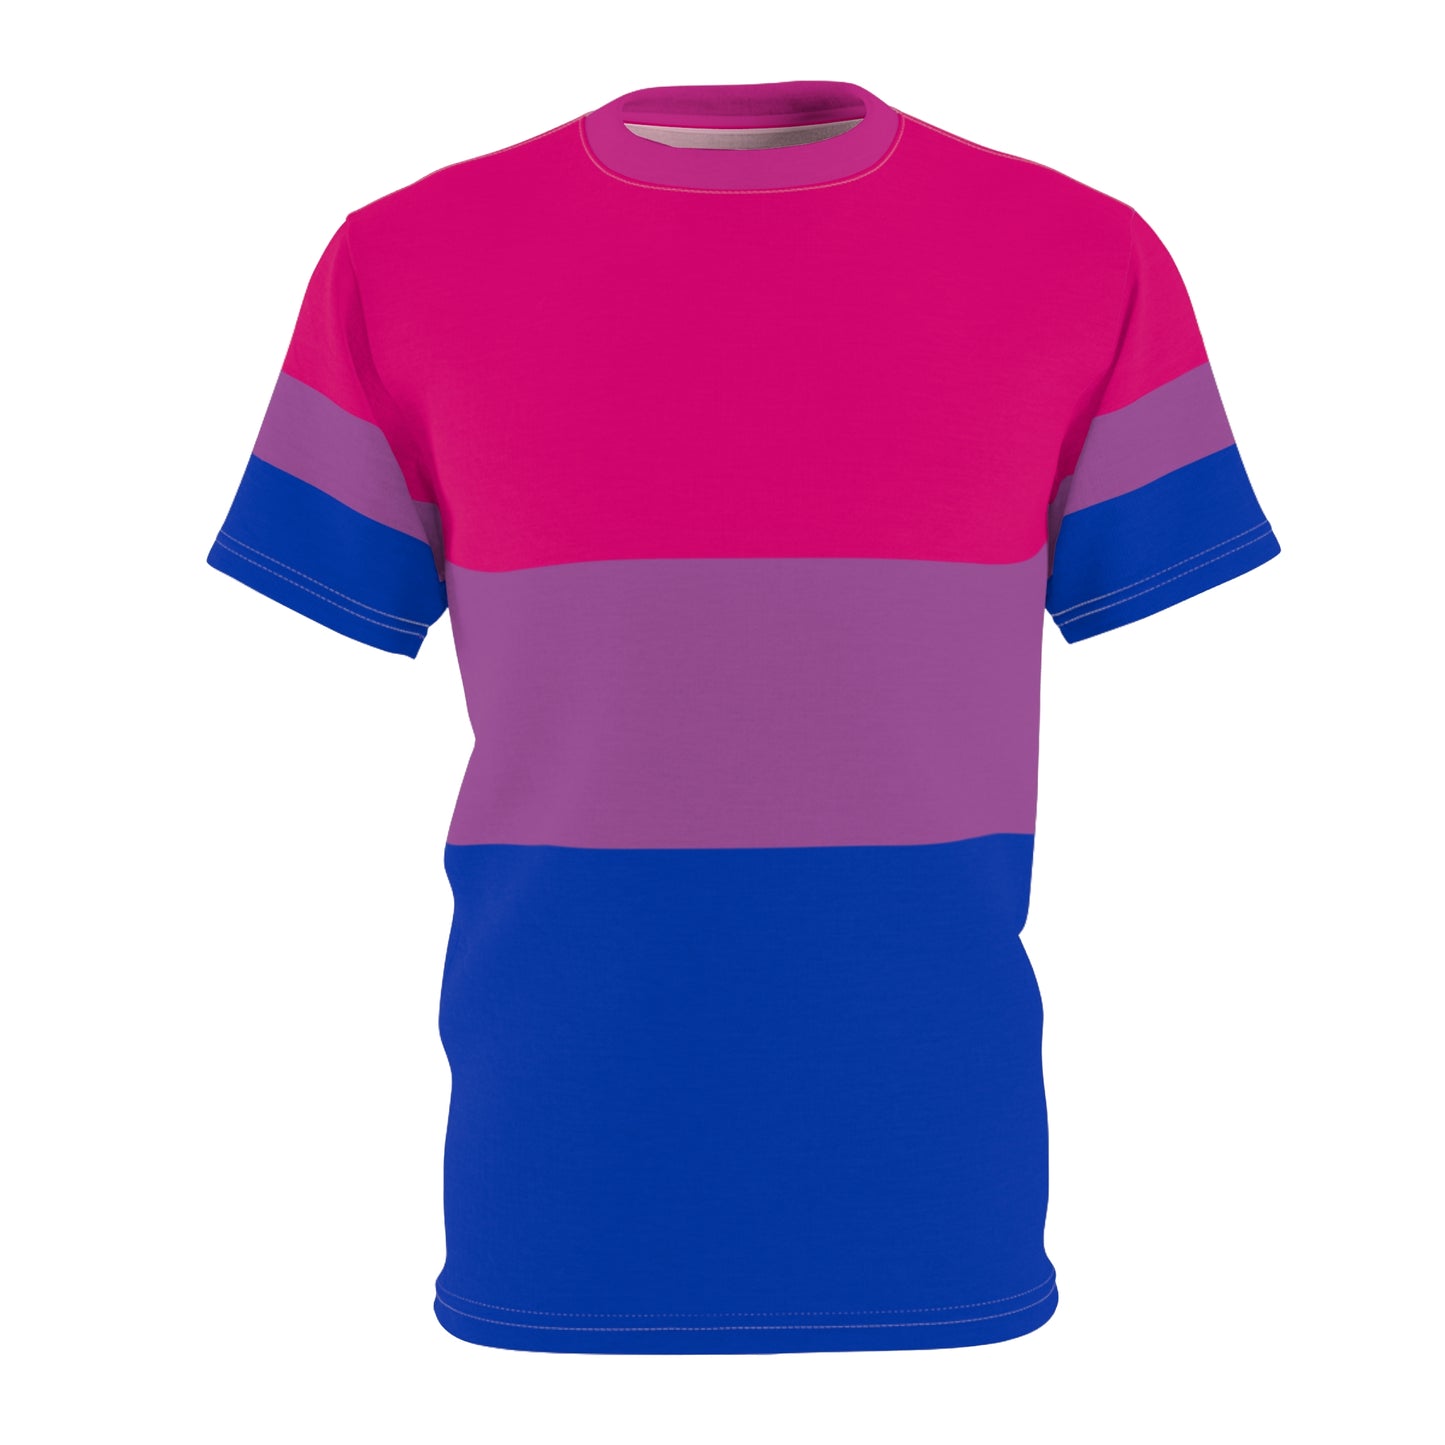 Bisexual Pride Unisex T-Shirt